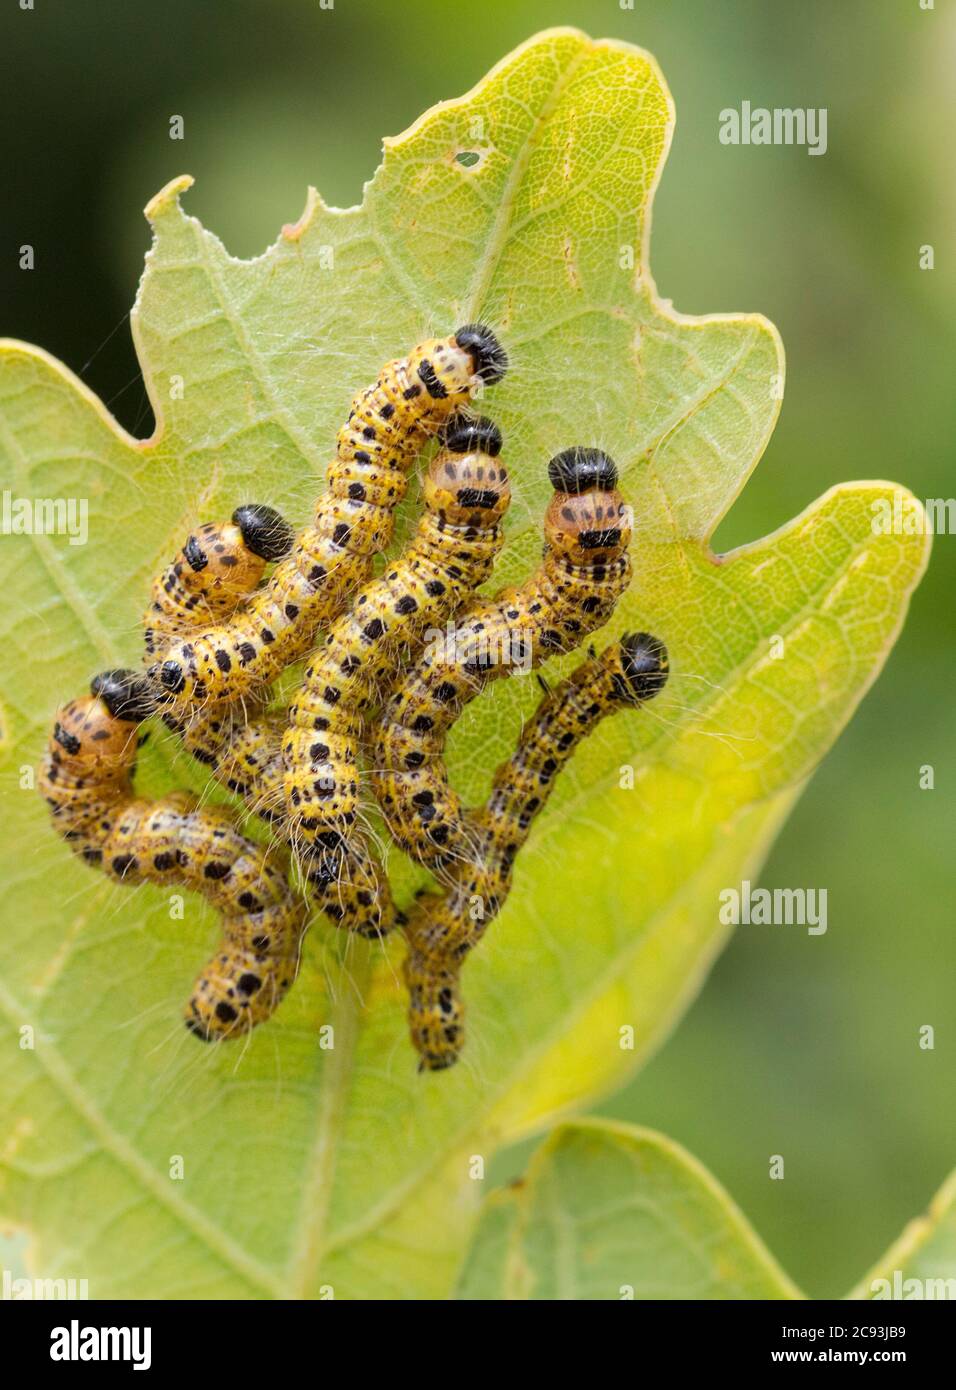 Gelbe Raupen mit Reihen von schwarzen Punkten ein schwarzer Kopf und lange  feine Haare in Gruppen auf der Unterseite der Blätter großen weißen  Schmetterling Stockfotografie - Alamy